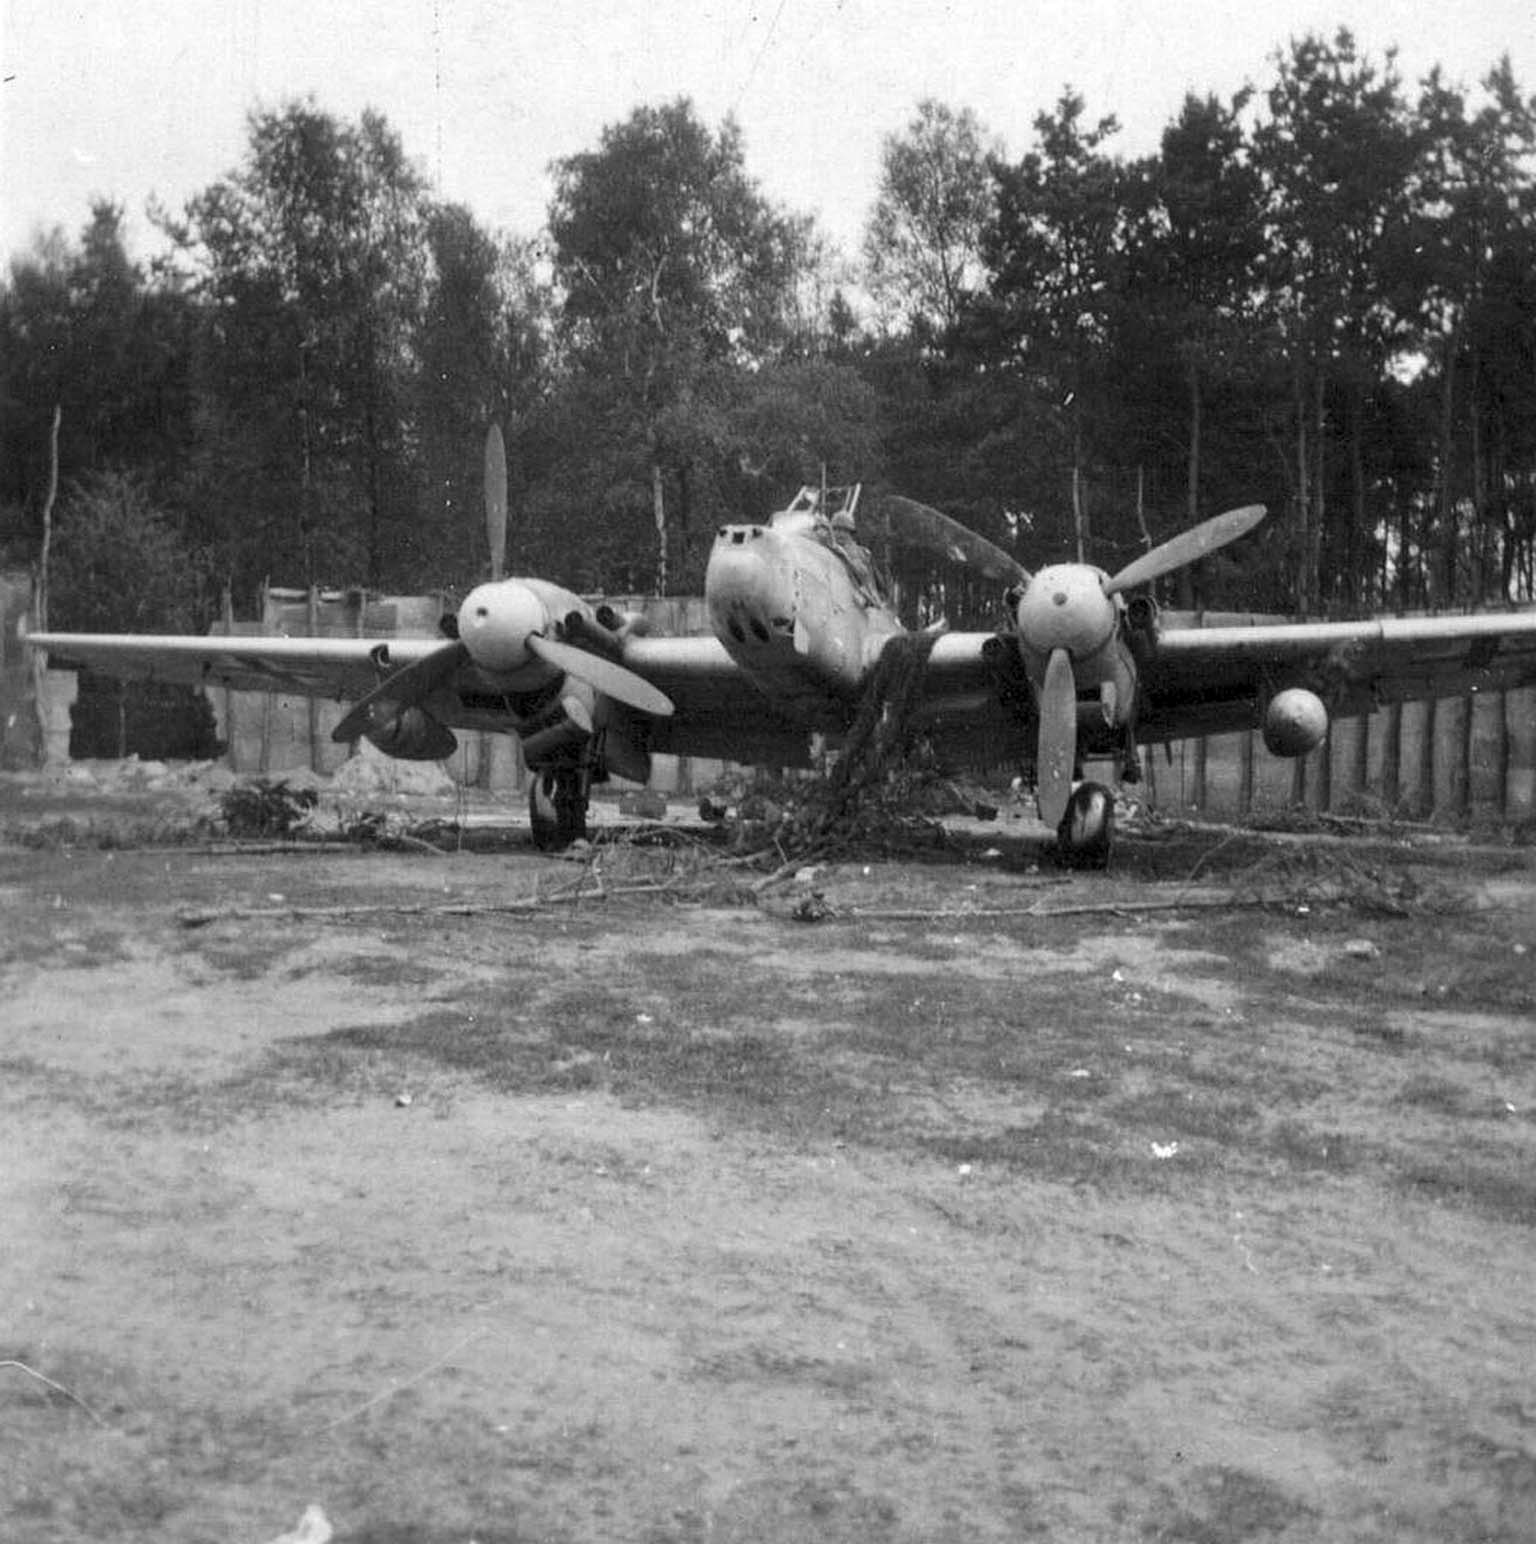 Messerschmitt Me-110